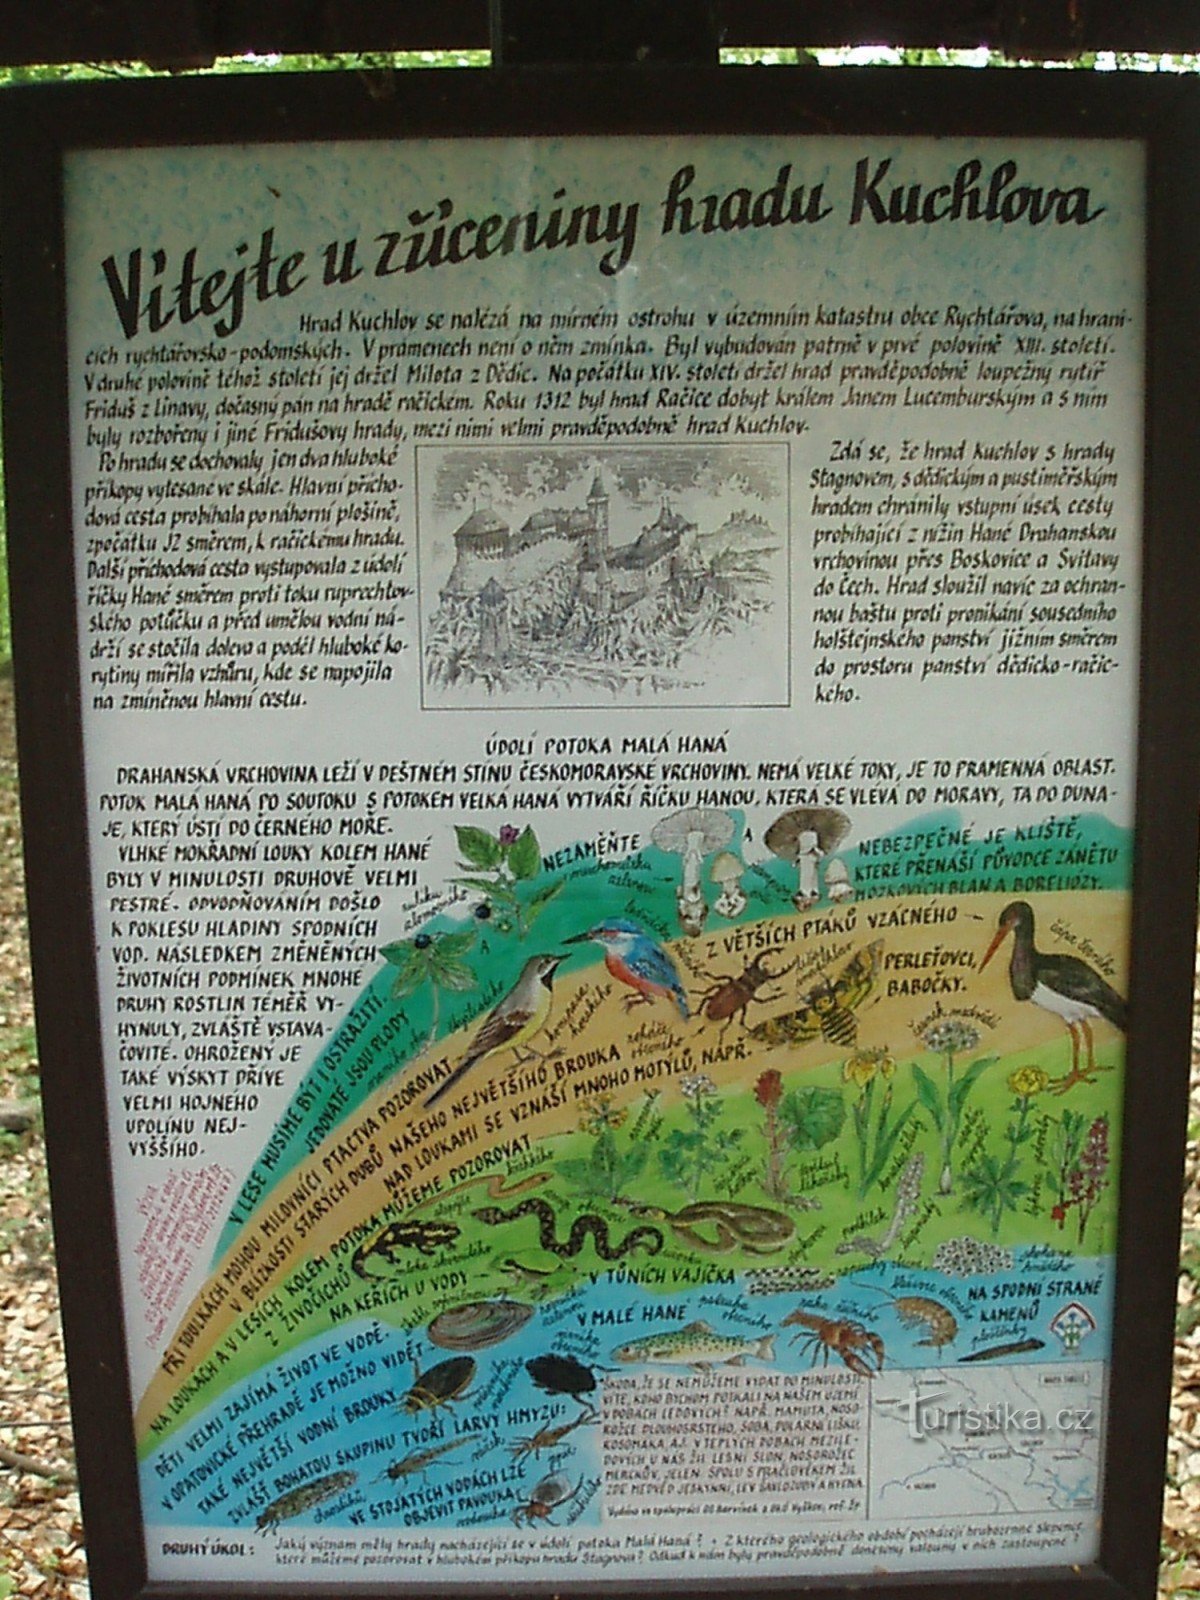 Information board under the Kuchlov ruins